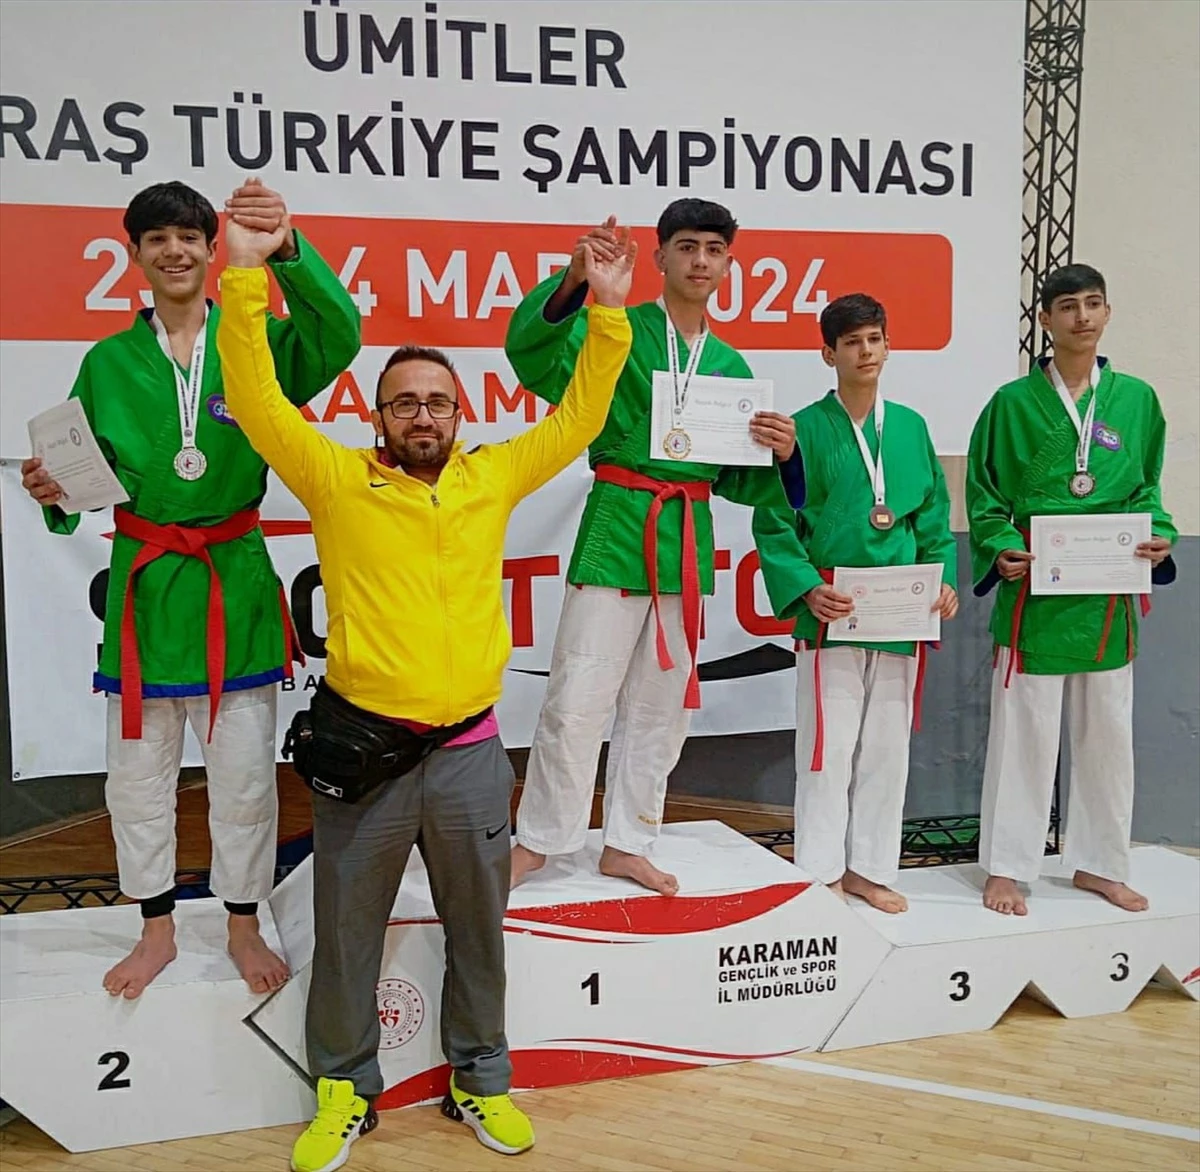 Diyarbakır Büyükşehir Belediyesi Sporcuları Ümitler Kuraş Türkiye Şampiyonasında Başarı Elde Etti